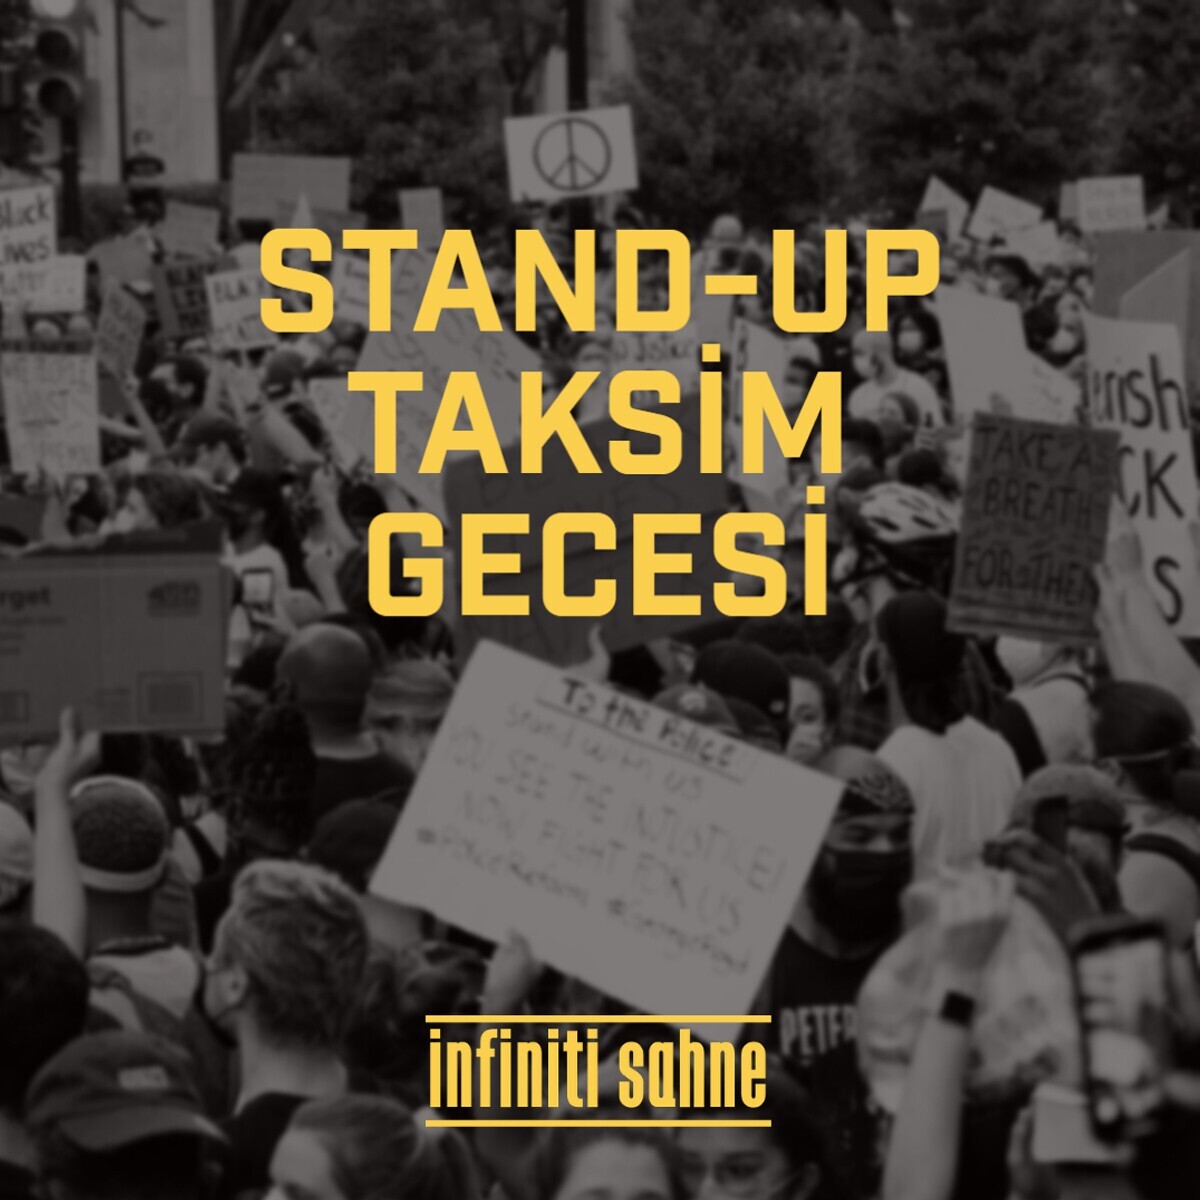 Taksim Stand Up Gecesi Gösteri Bileti